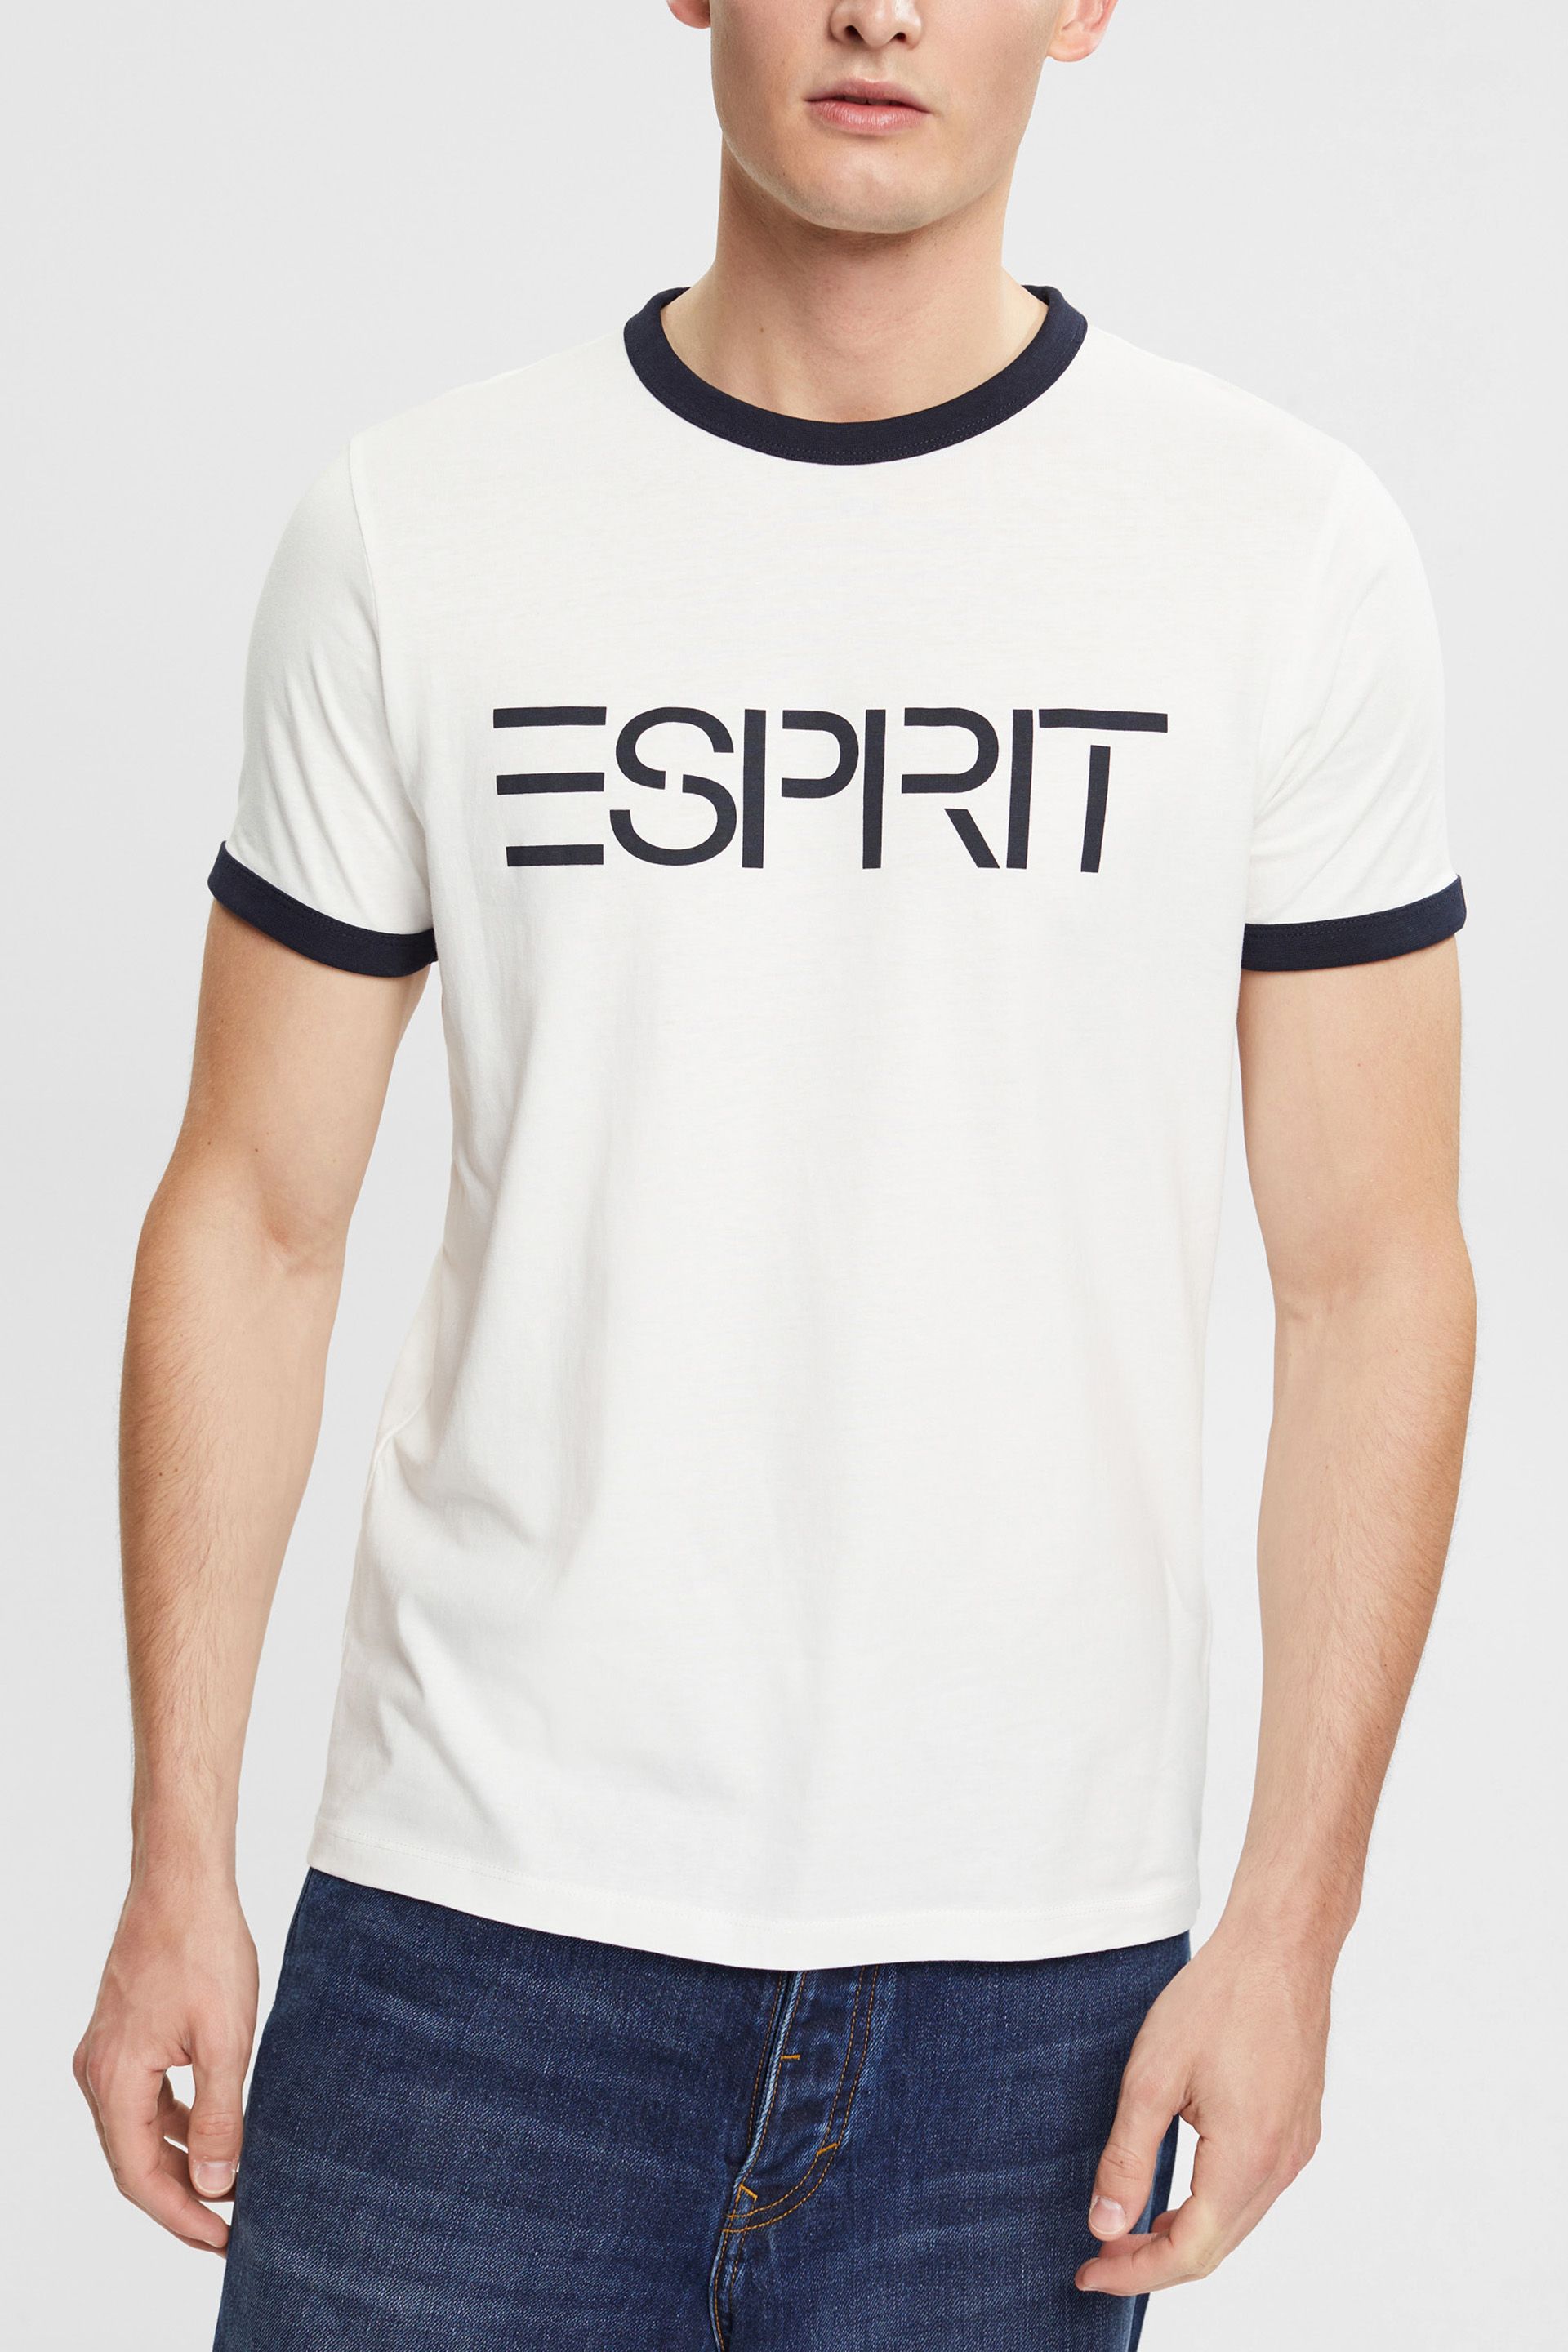 Wetland september Faktura Jersey logo print T-shirt | Esprit Store